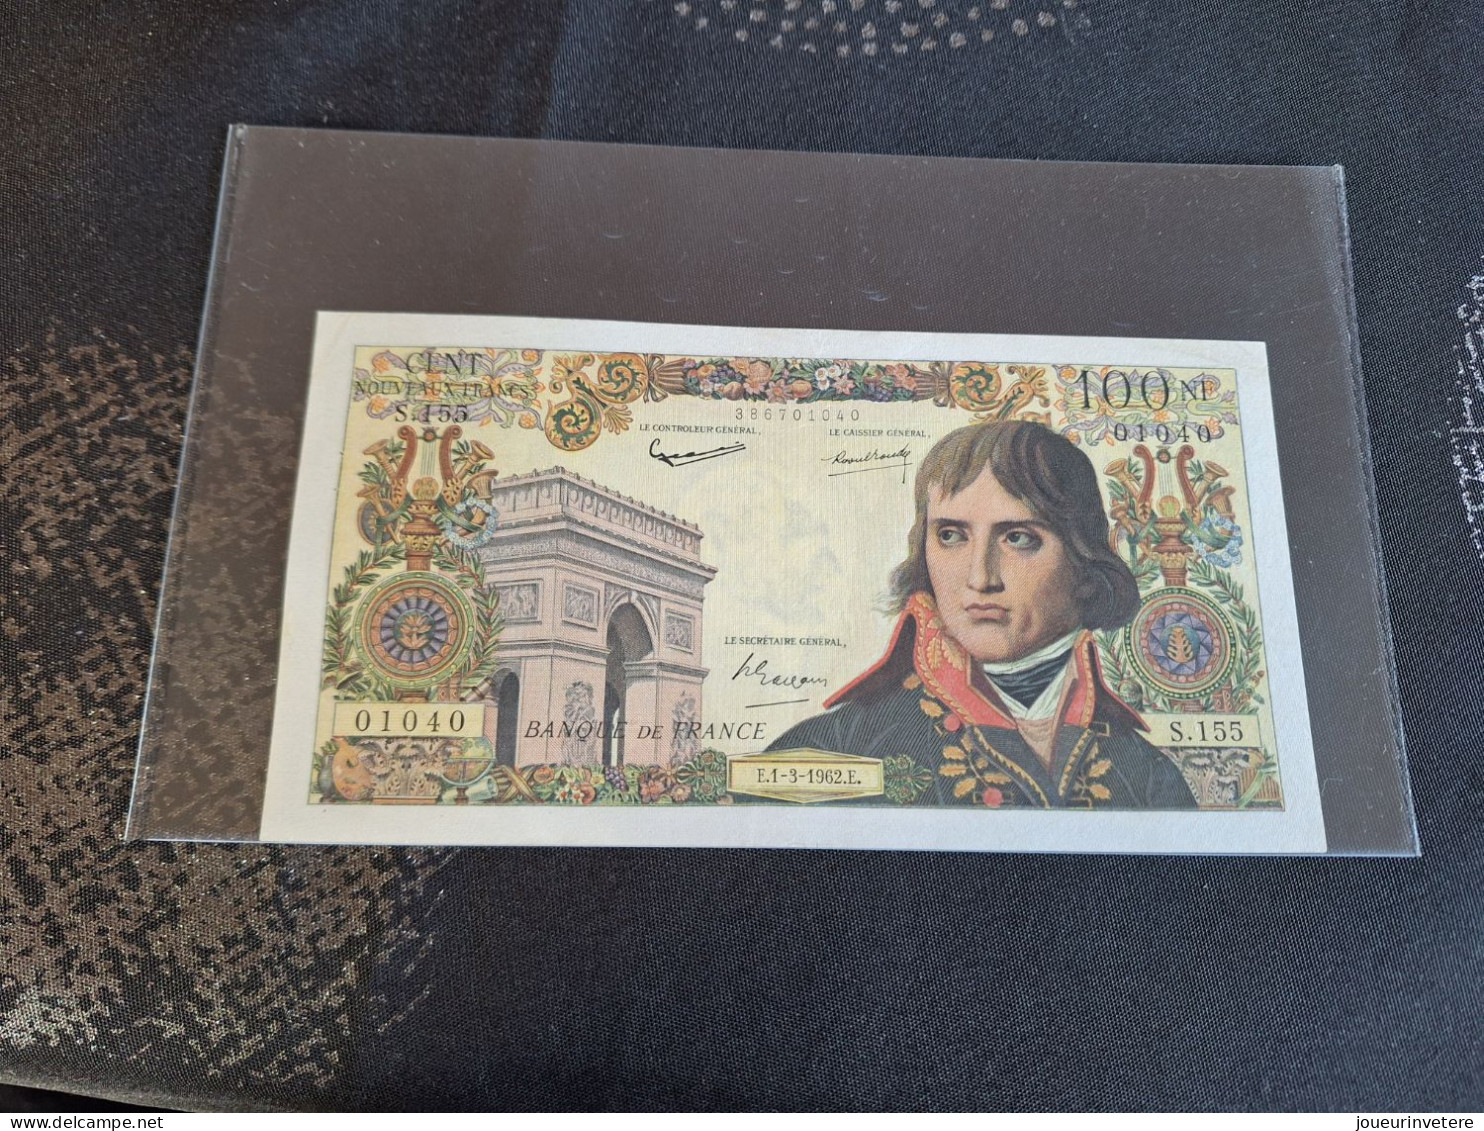 Billet 100 Nouveau Franc Bonaparte 1962 Spl Avec Certificat D'authenticité - Other - Europe